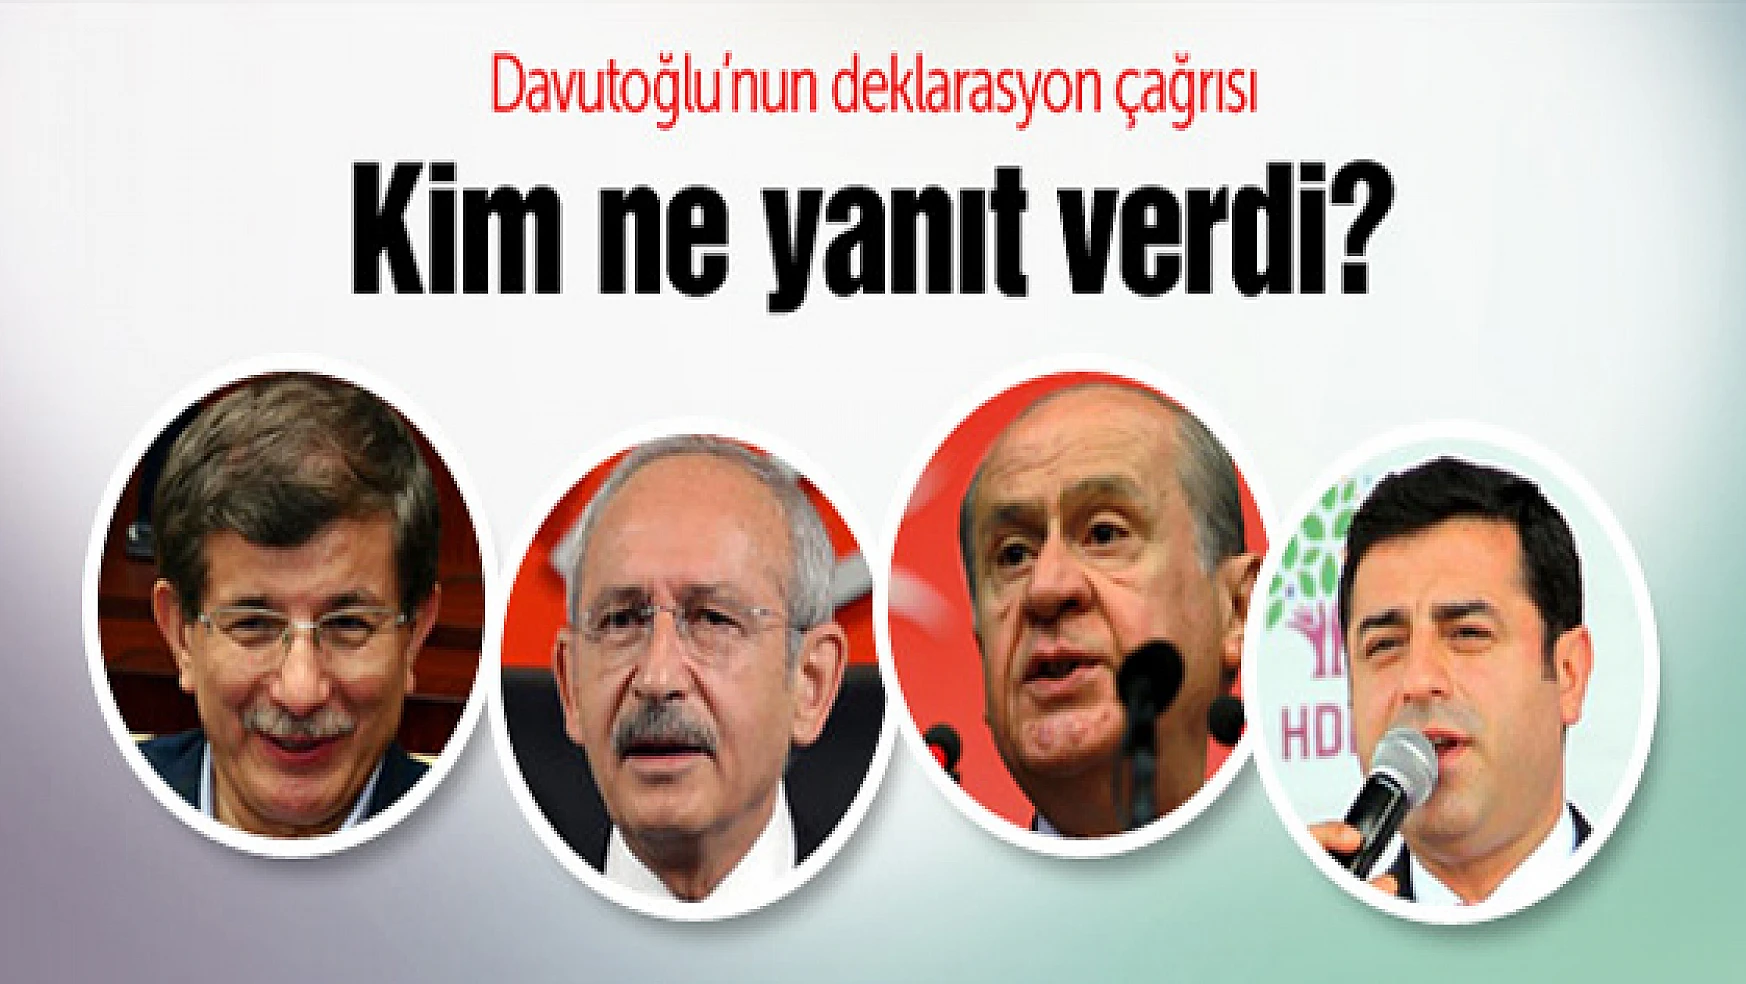 Davutoğlu'nun deklarasyon çağrısına 2 partiden yanıt